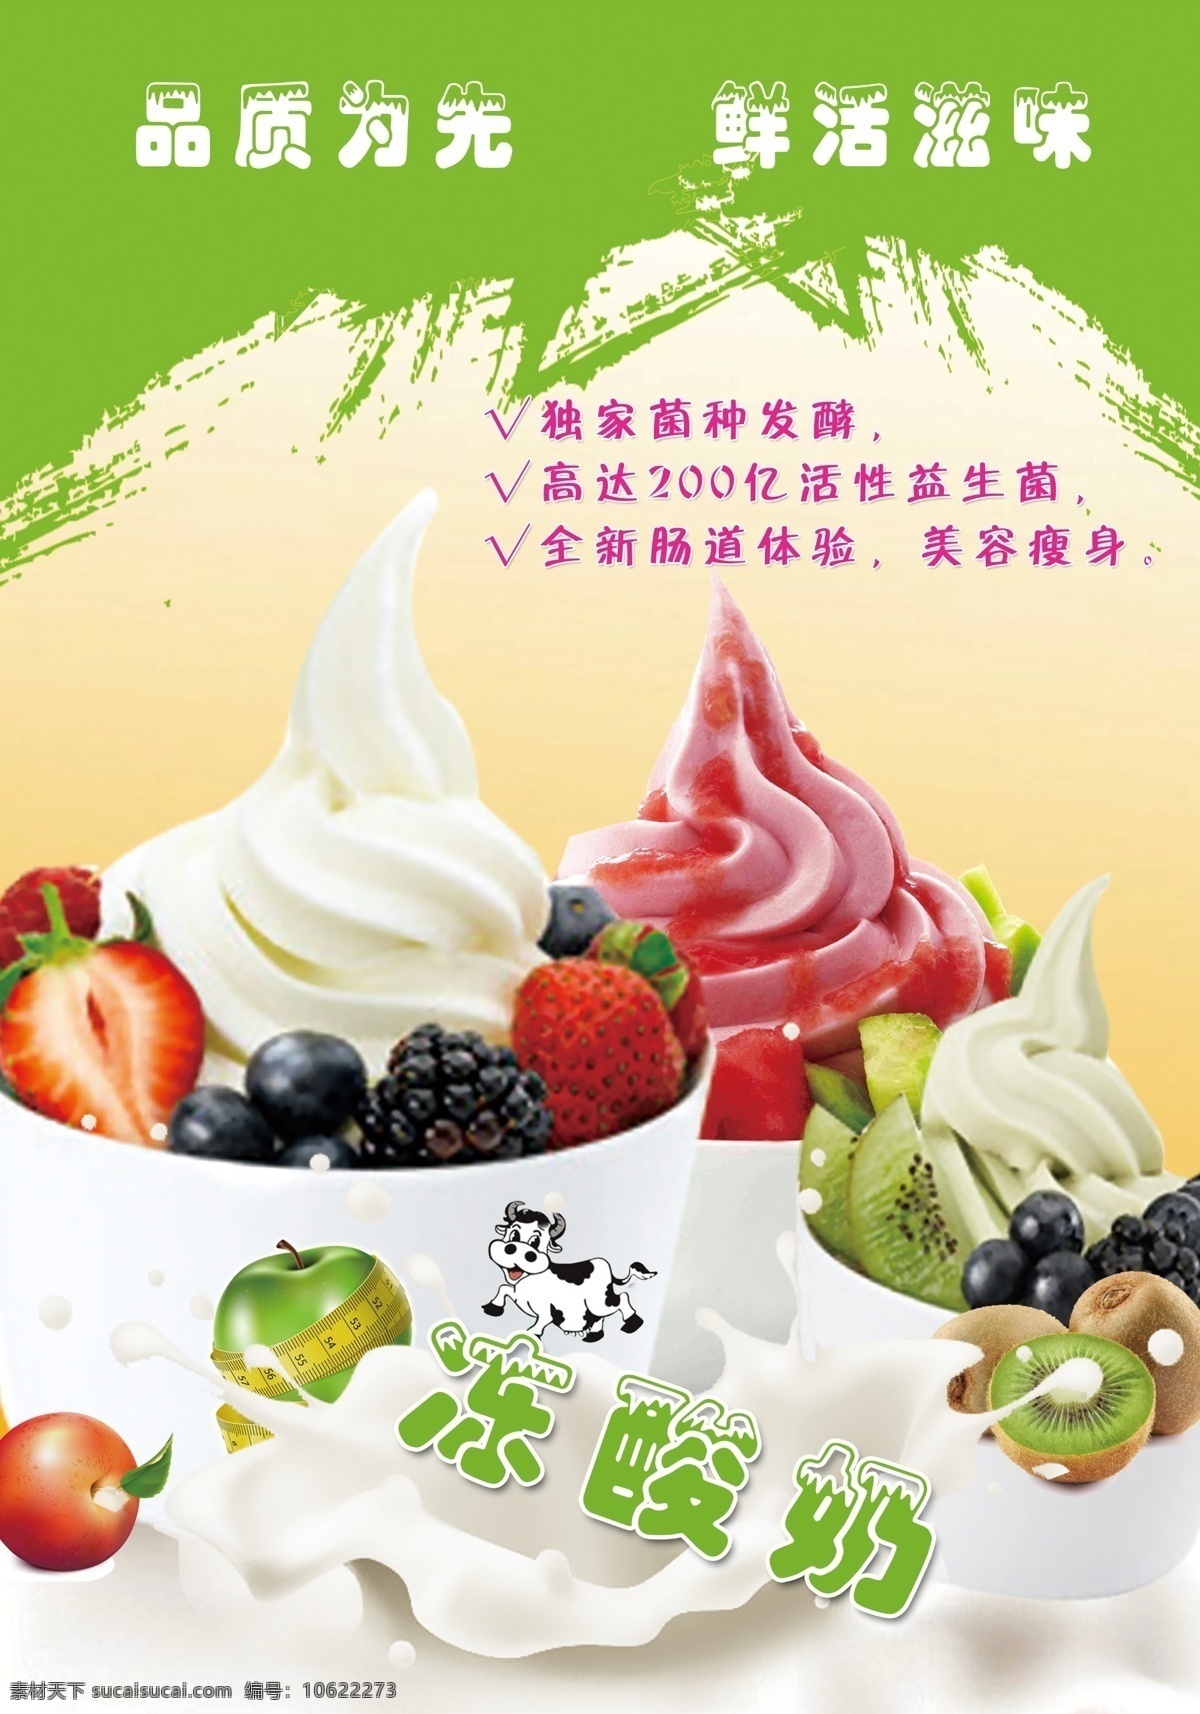 冻酸奶海报 冻酸奶 酸奶 水果酸奶 果味酸奶 酸奶冰淇淋